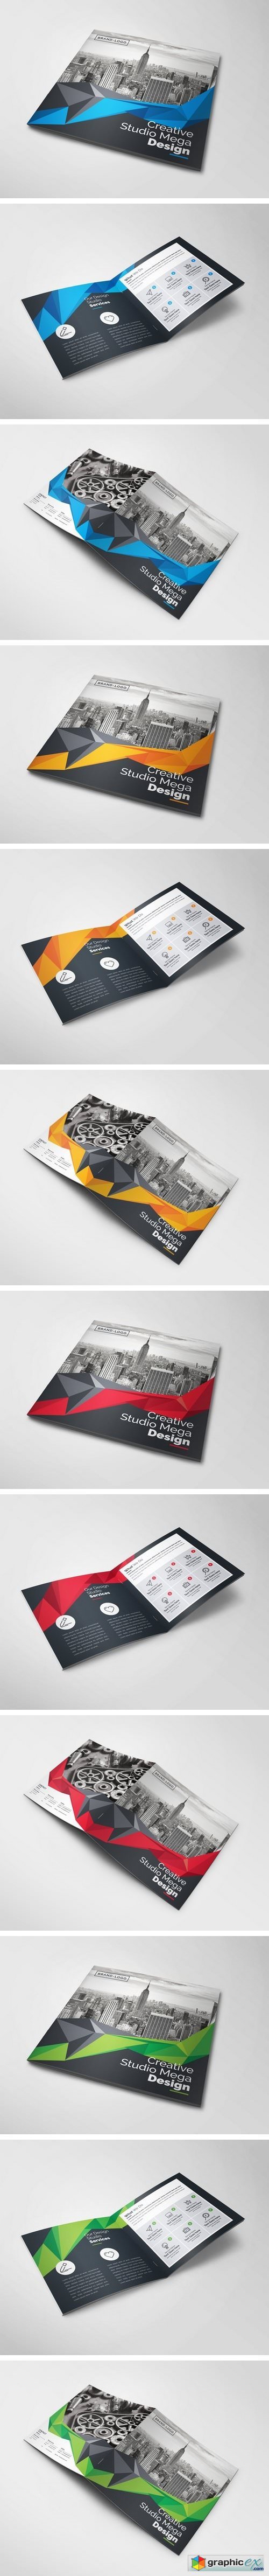 Creative Square Bi-Fold Brochure